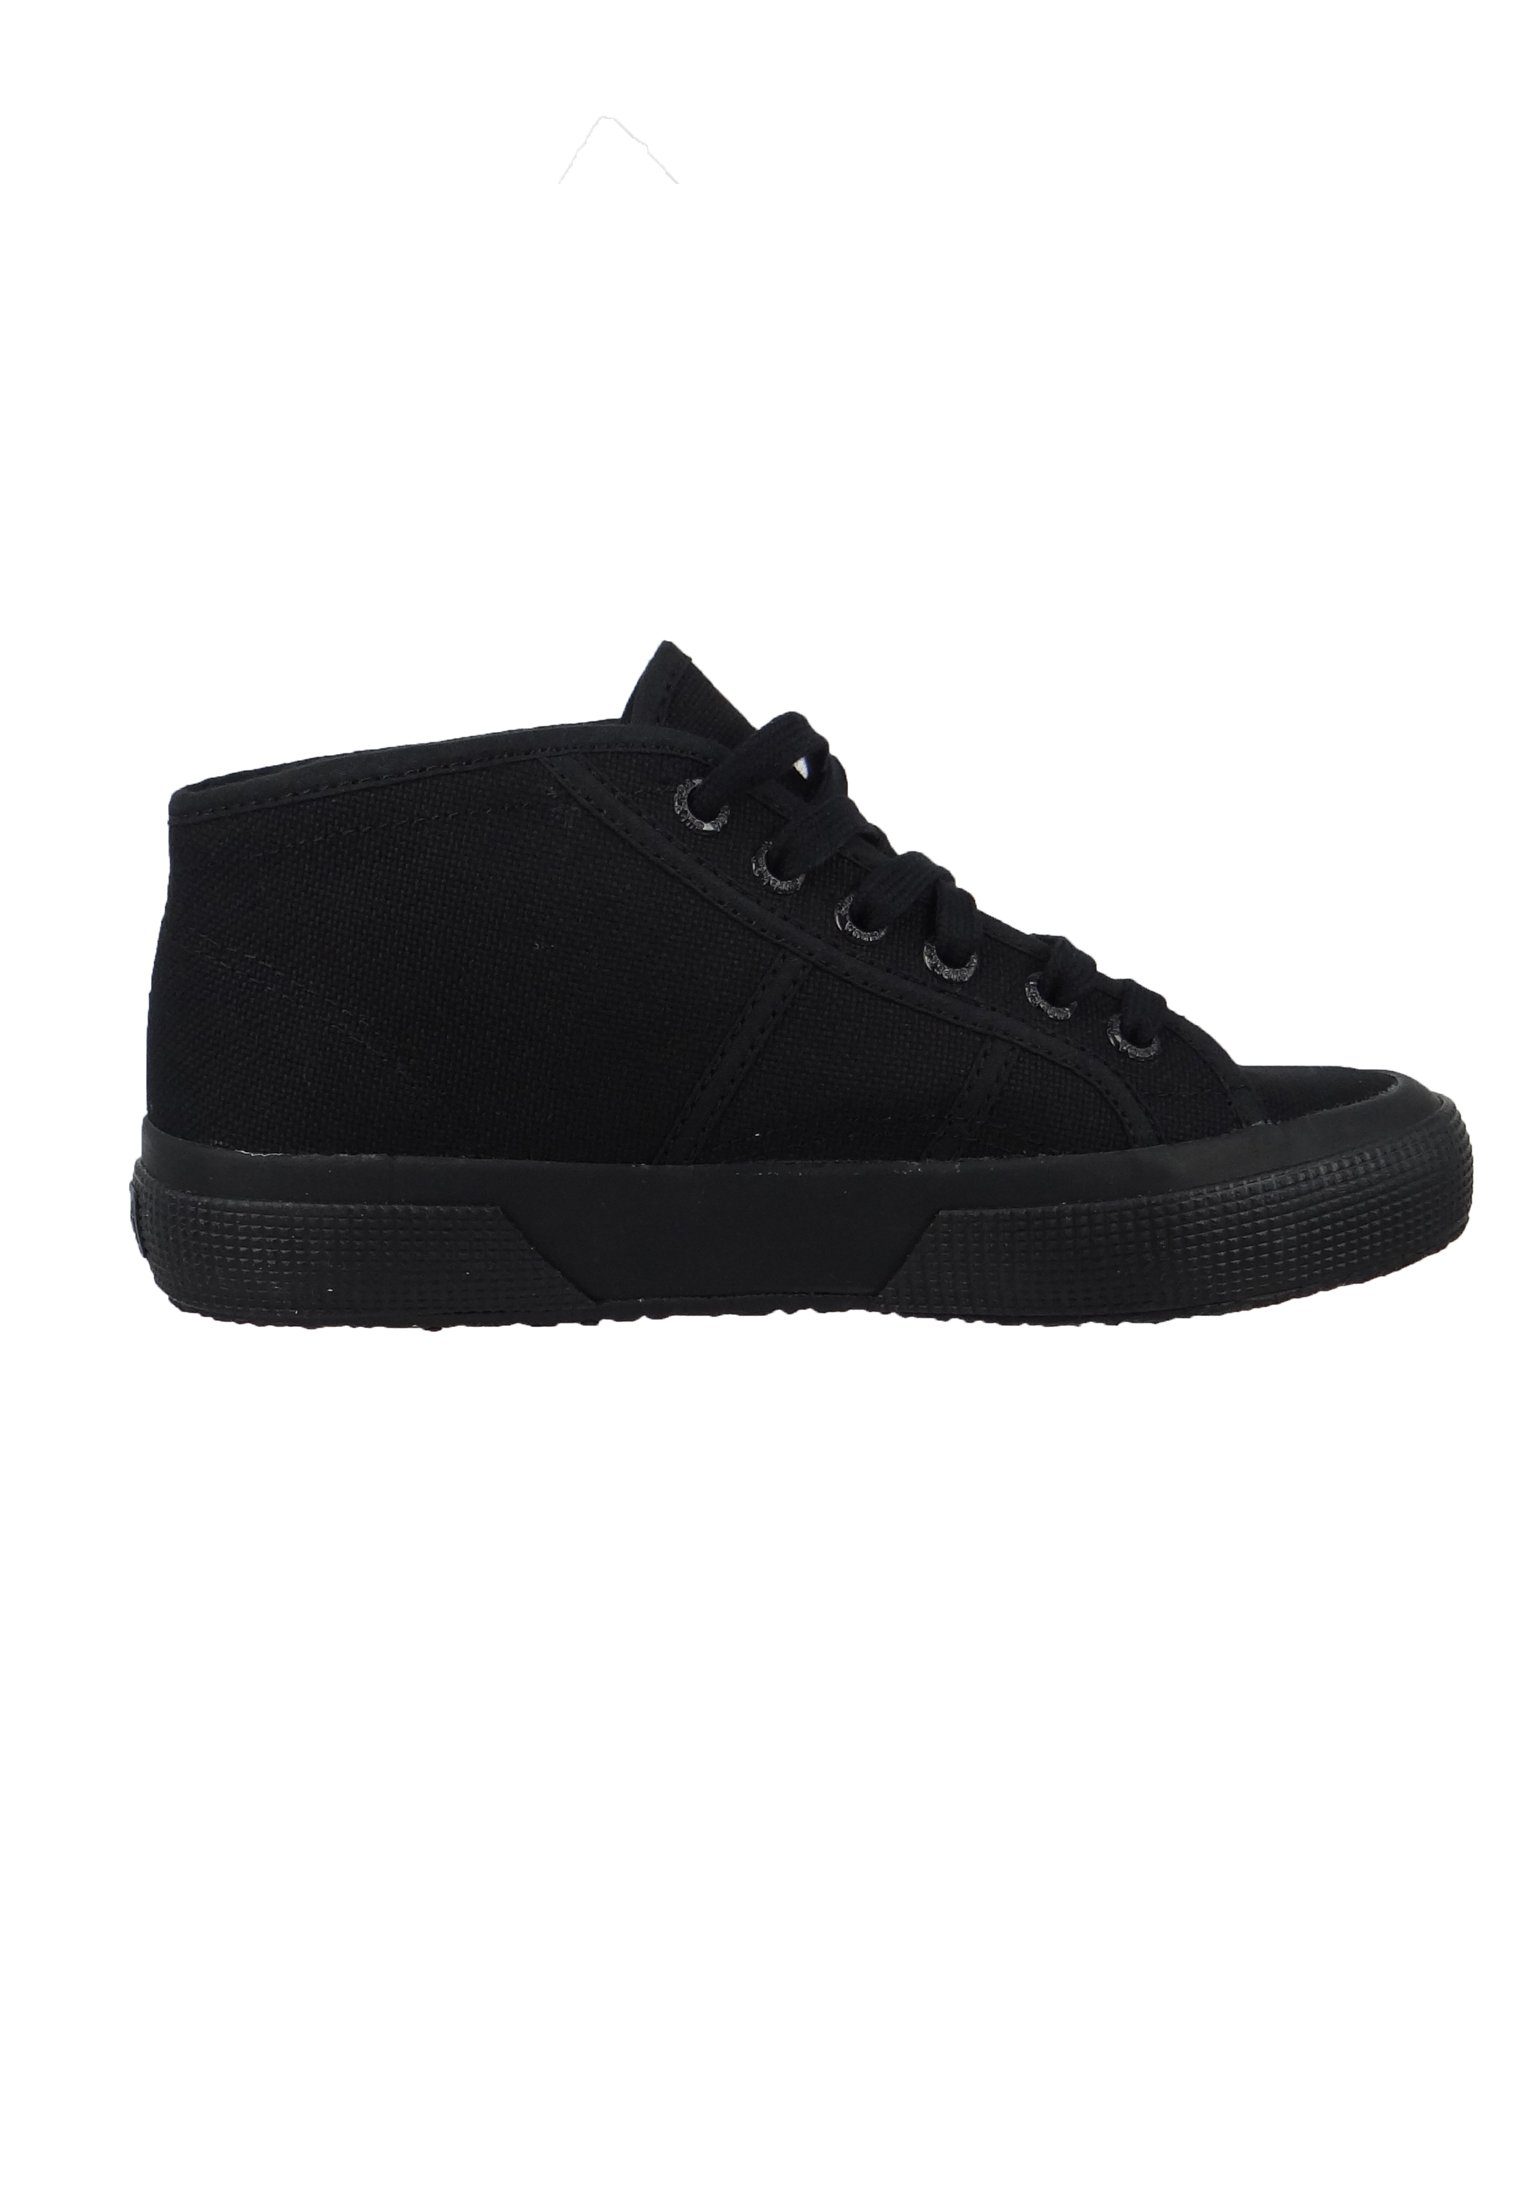 Schuhe Alle Sneaker Superga S000920-2754 997 total Black Sneaker